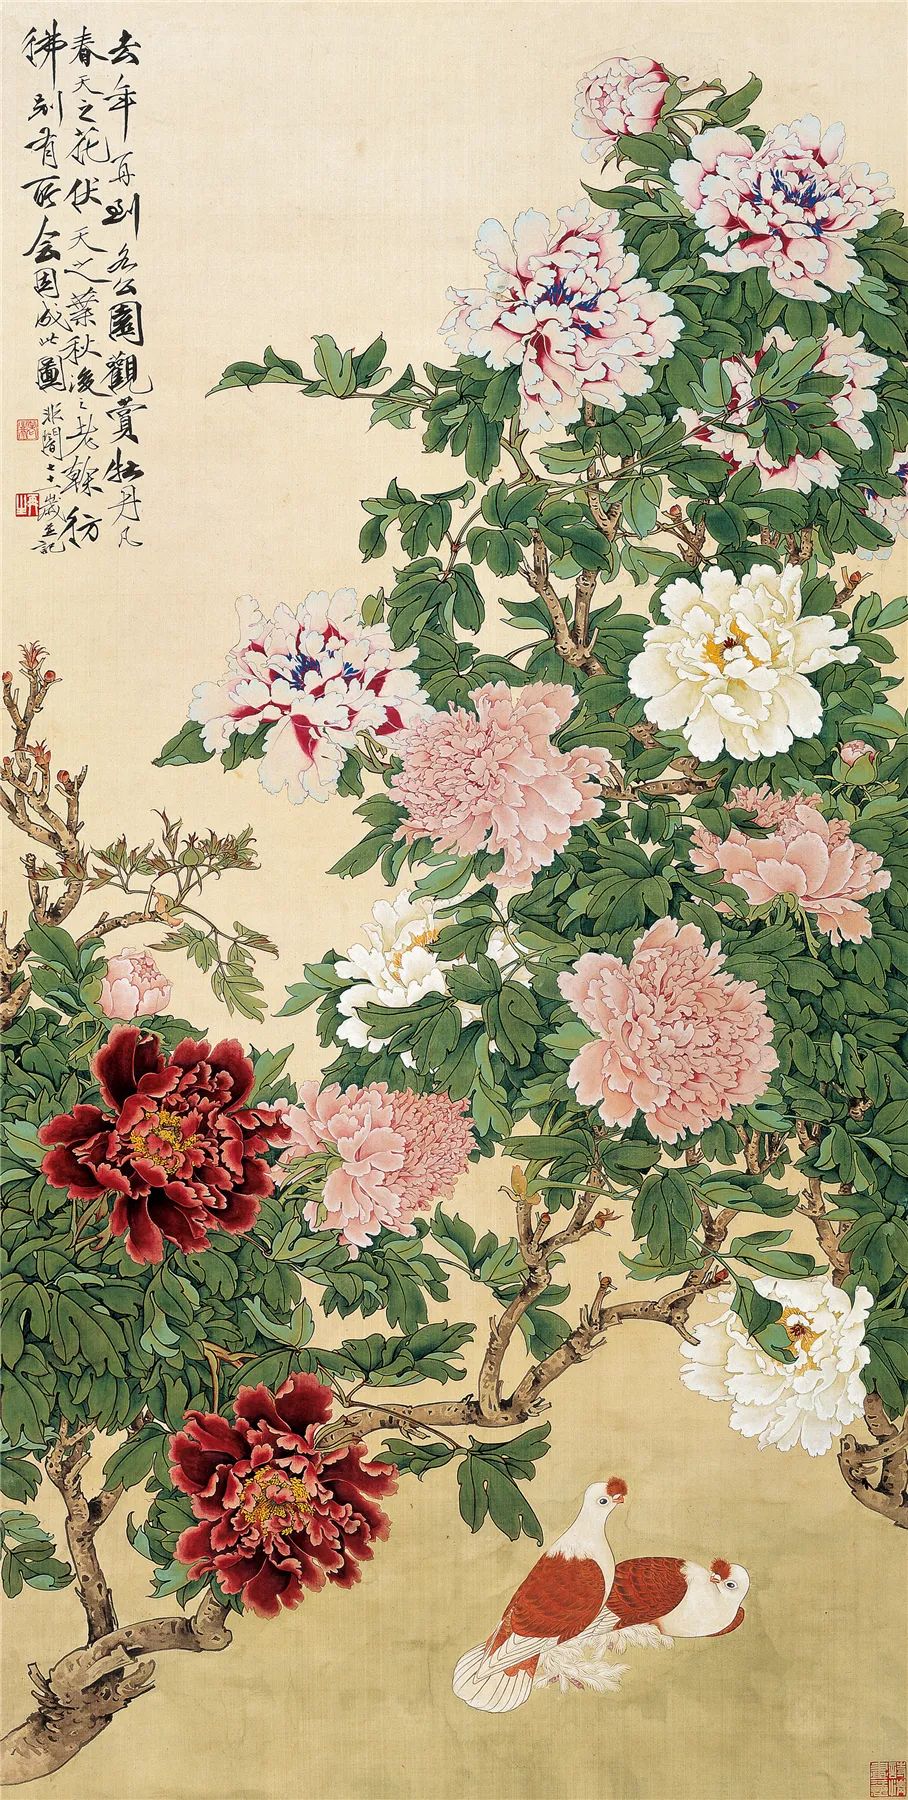 牡丹双鸽图 于非闇 162×81.5cm 绢本设色 北京画院藏 1959